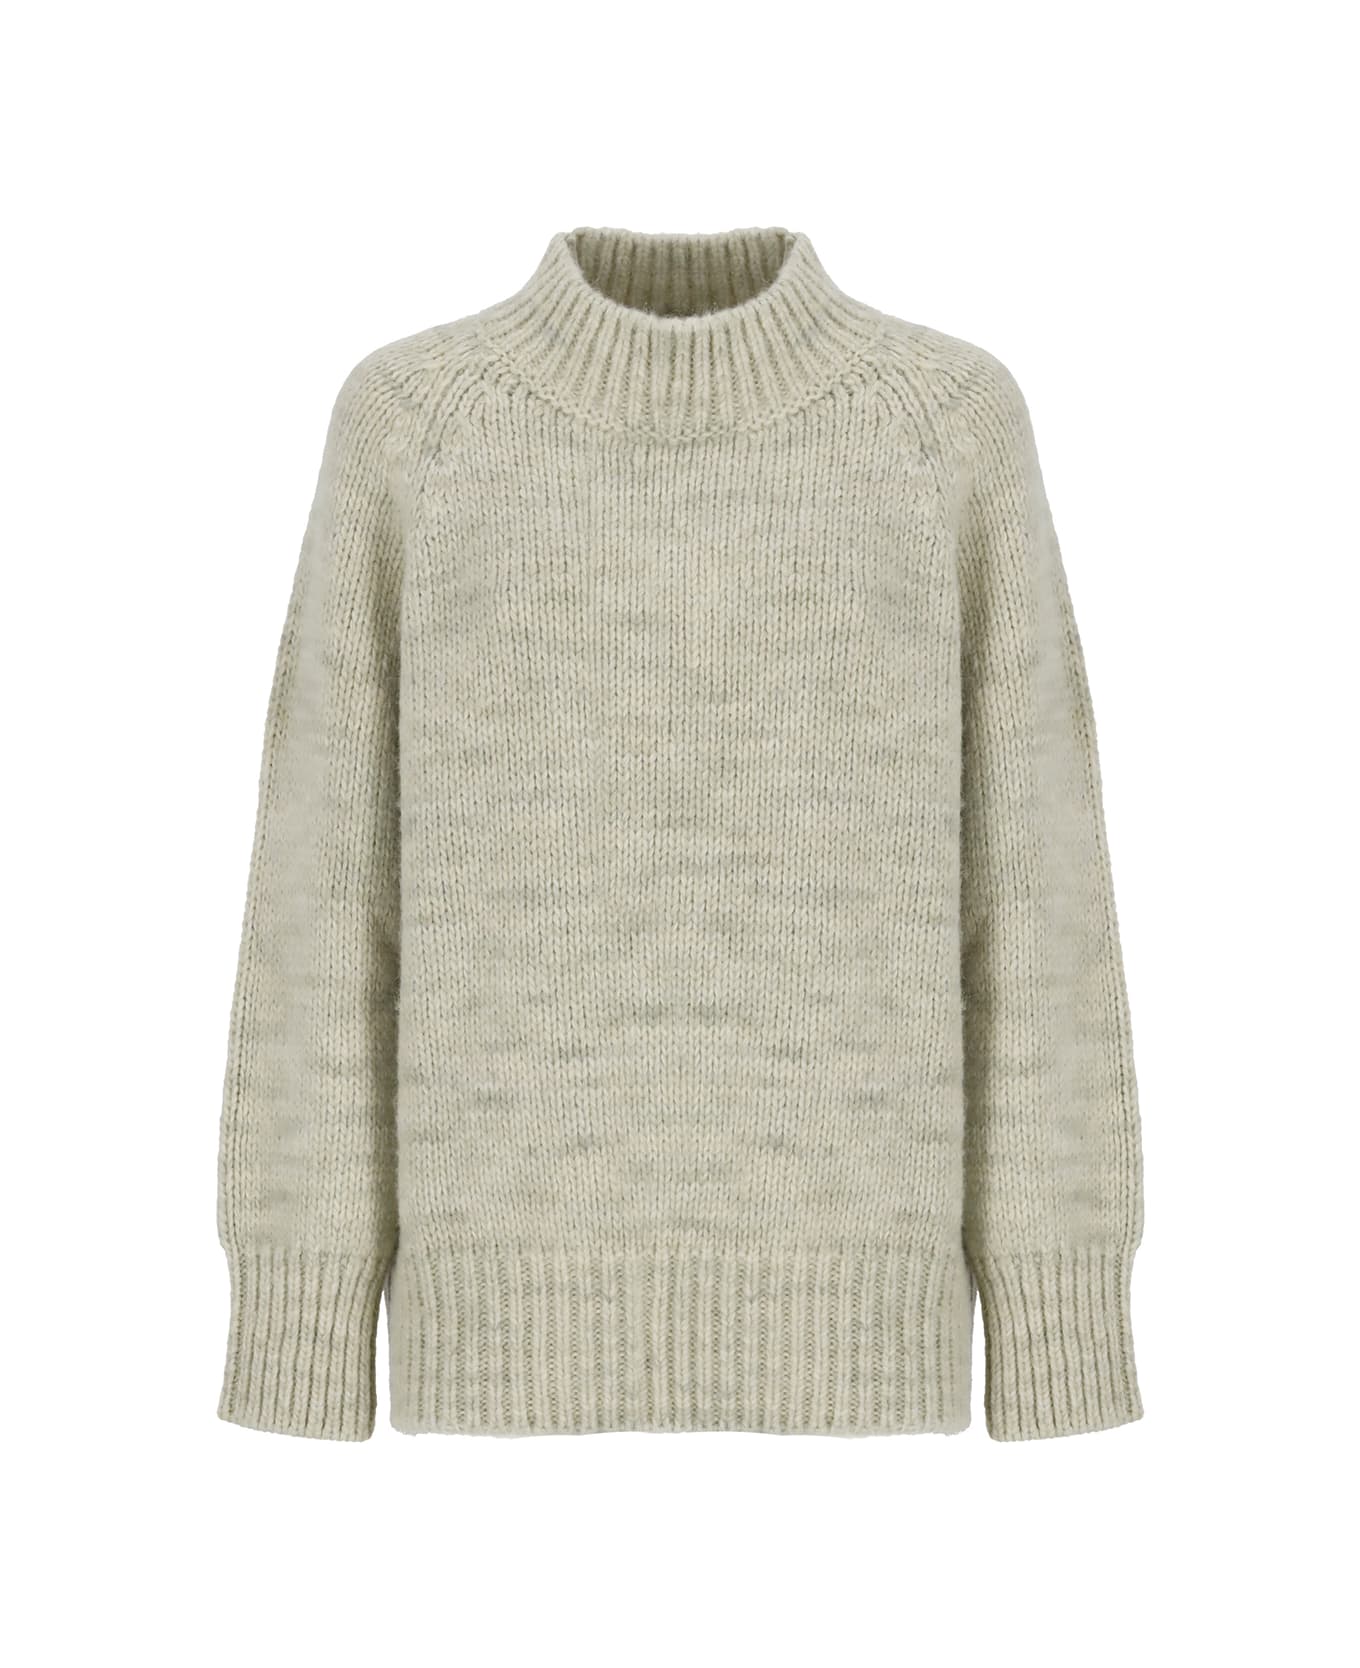 Maison Margiela Alpaca Sweater - Green